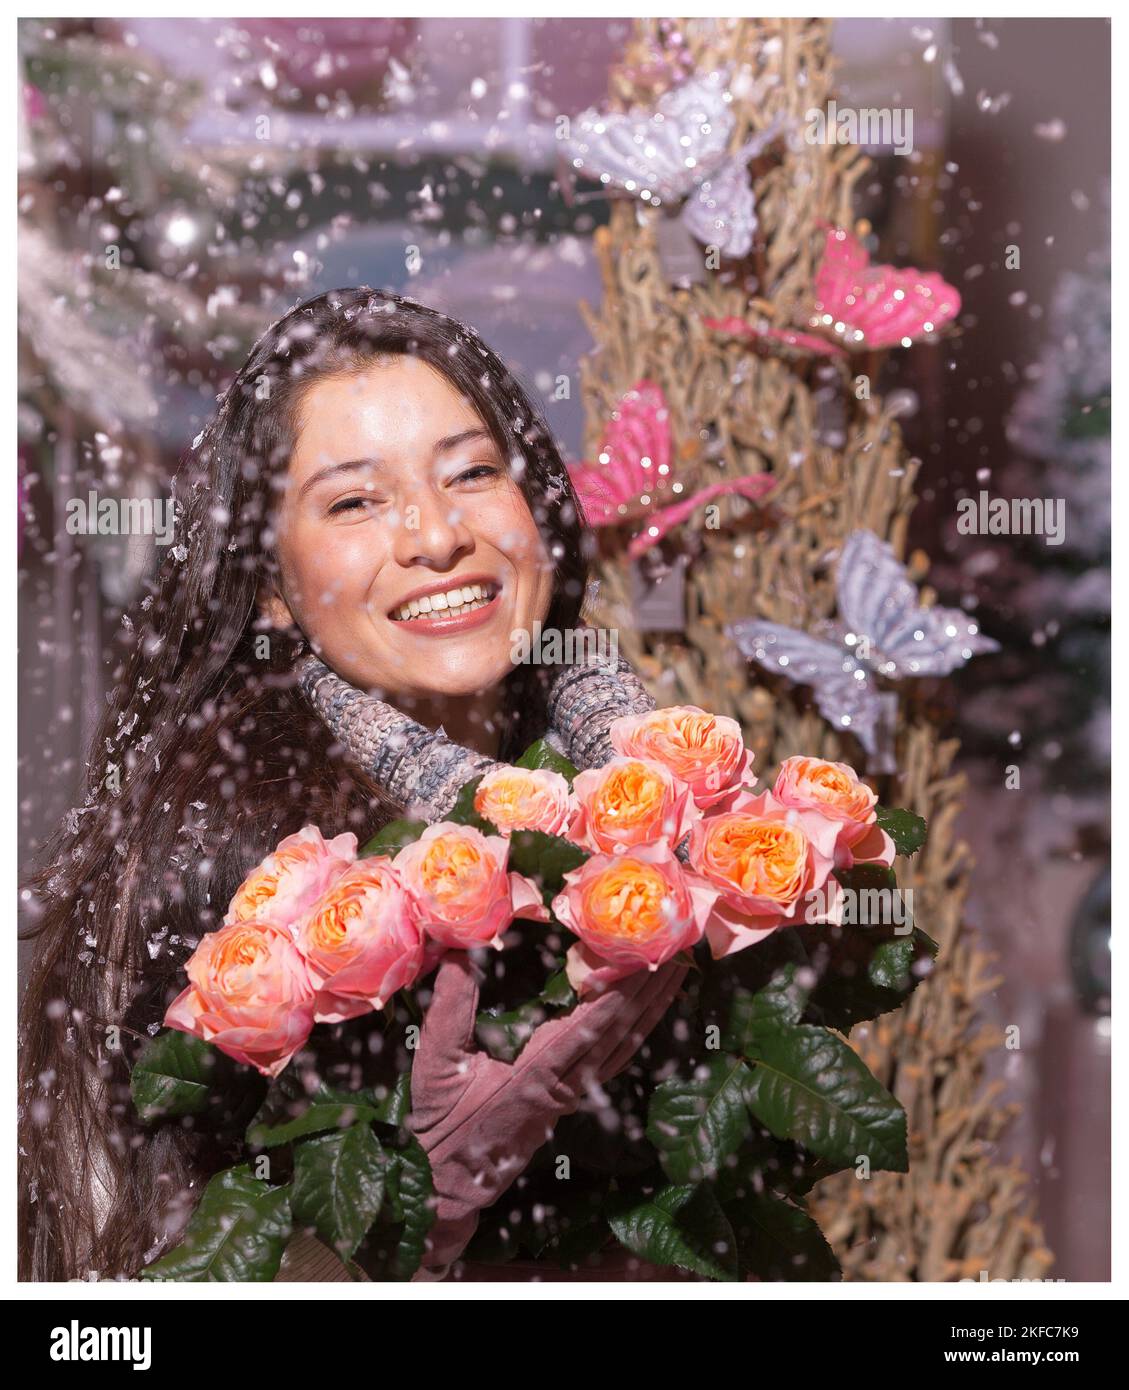 Fille avec un bouquet de roses en hiver. EDE, pays-Bas, vvbvanbree fotografie Banque D'Images